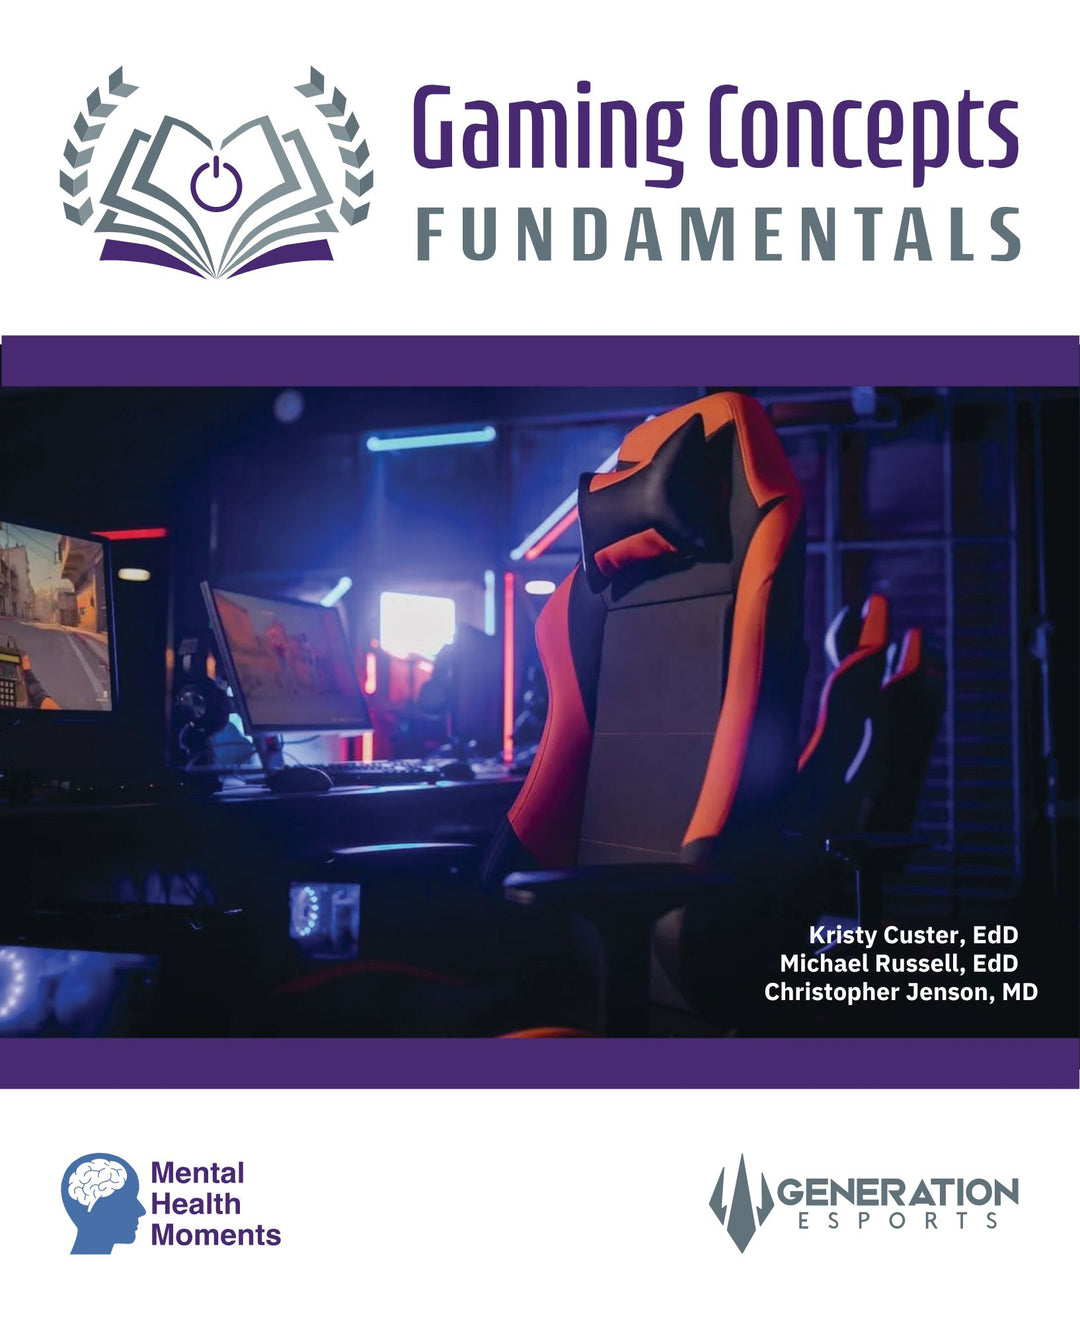 Generation Esports: Gaming Concepts - Fundamentals (Digital Curriculum)